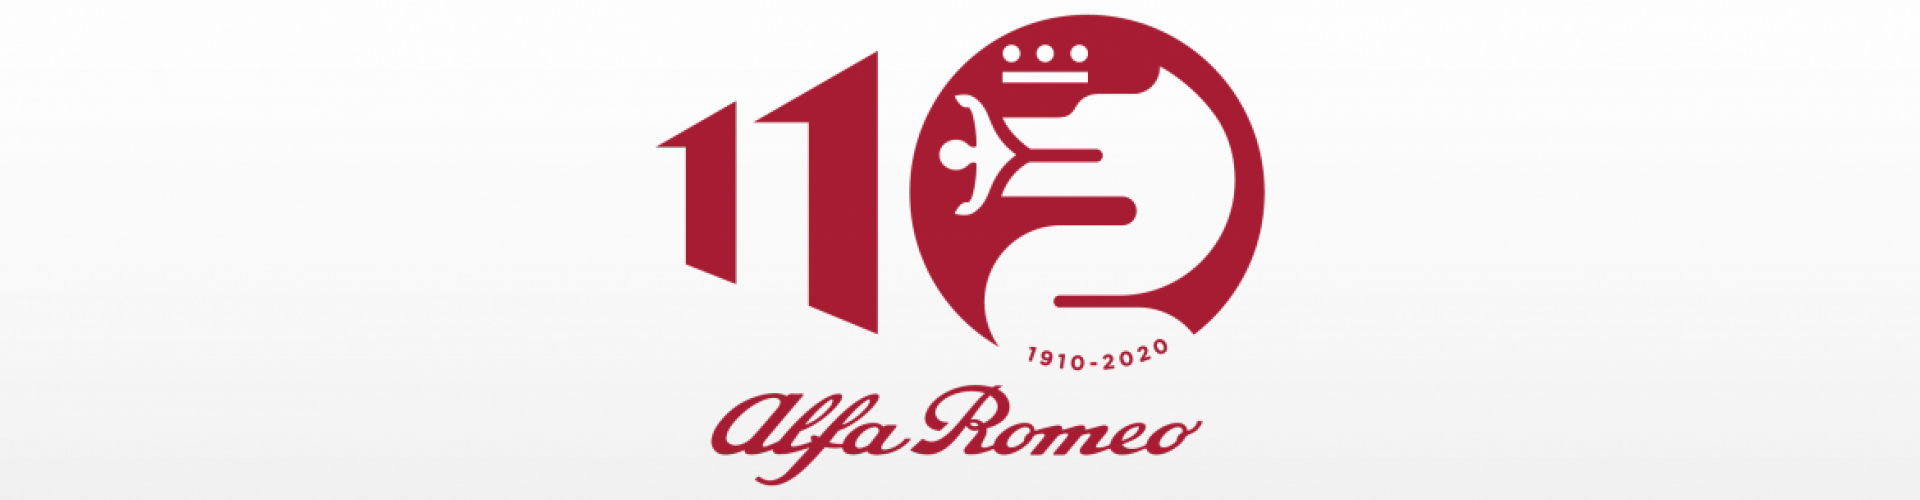 BUON COMPLEANNO ALFA ROMEO: 110 ANNI DI STORIA: Immagine